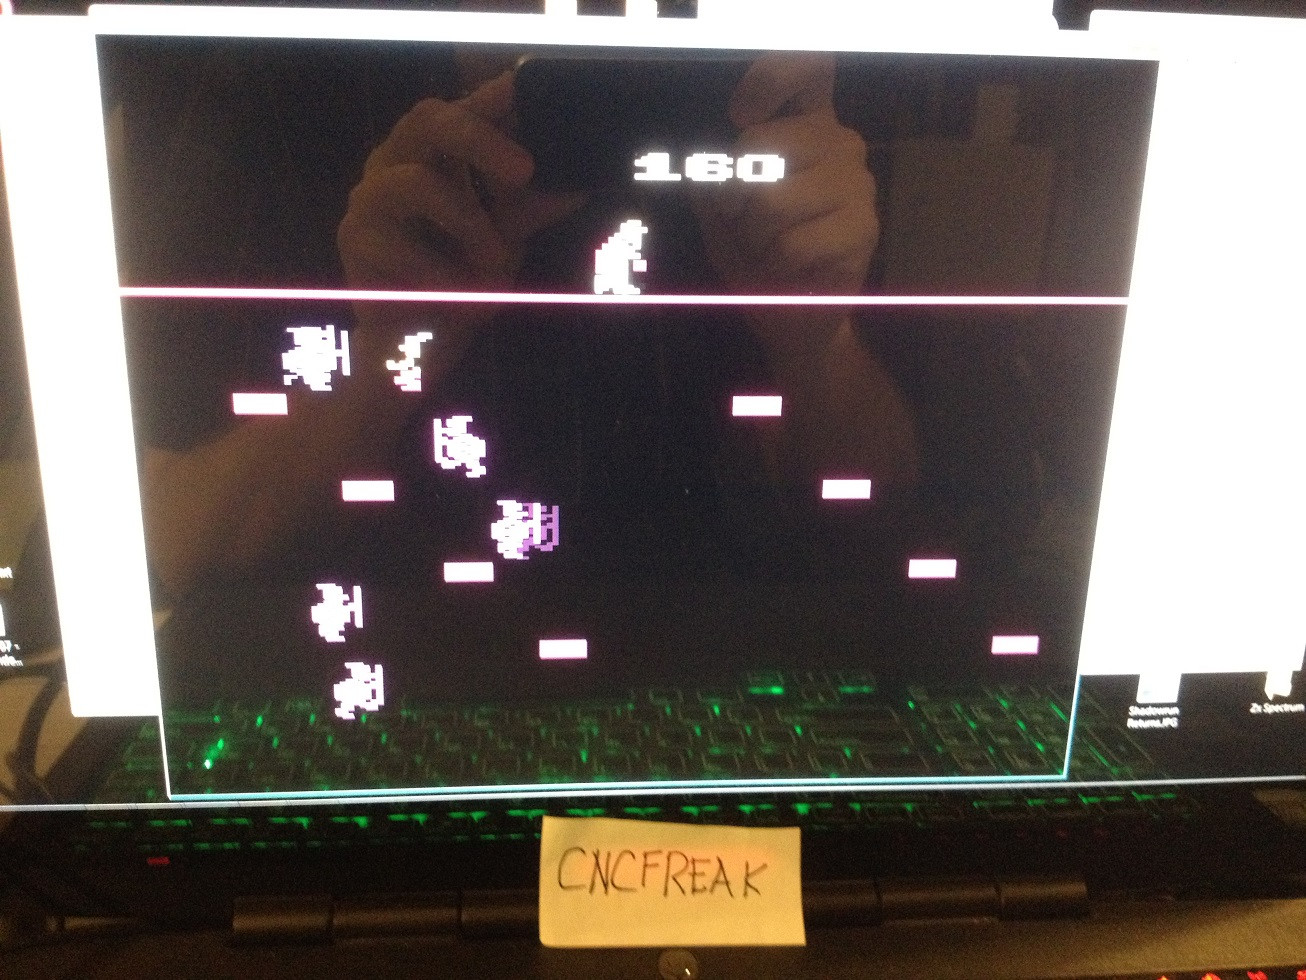 cncfreak: Obelix (Atari 2600 Emulated Novice/B Mode) 160 points on 2013-10-15 21:48:15